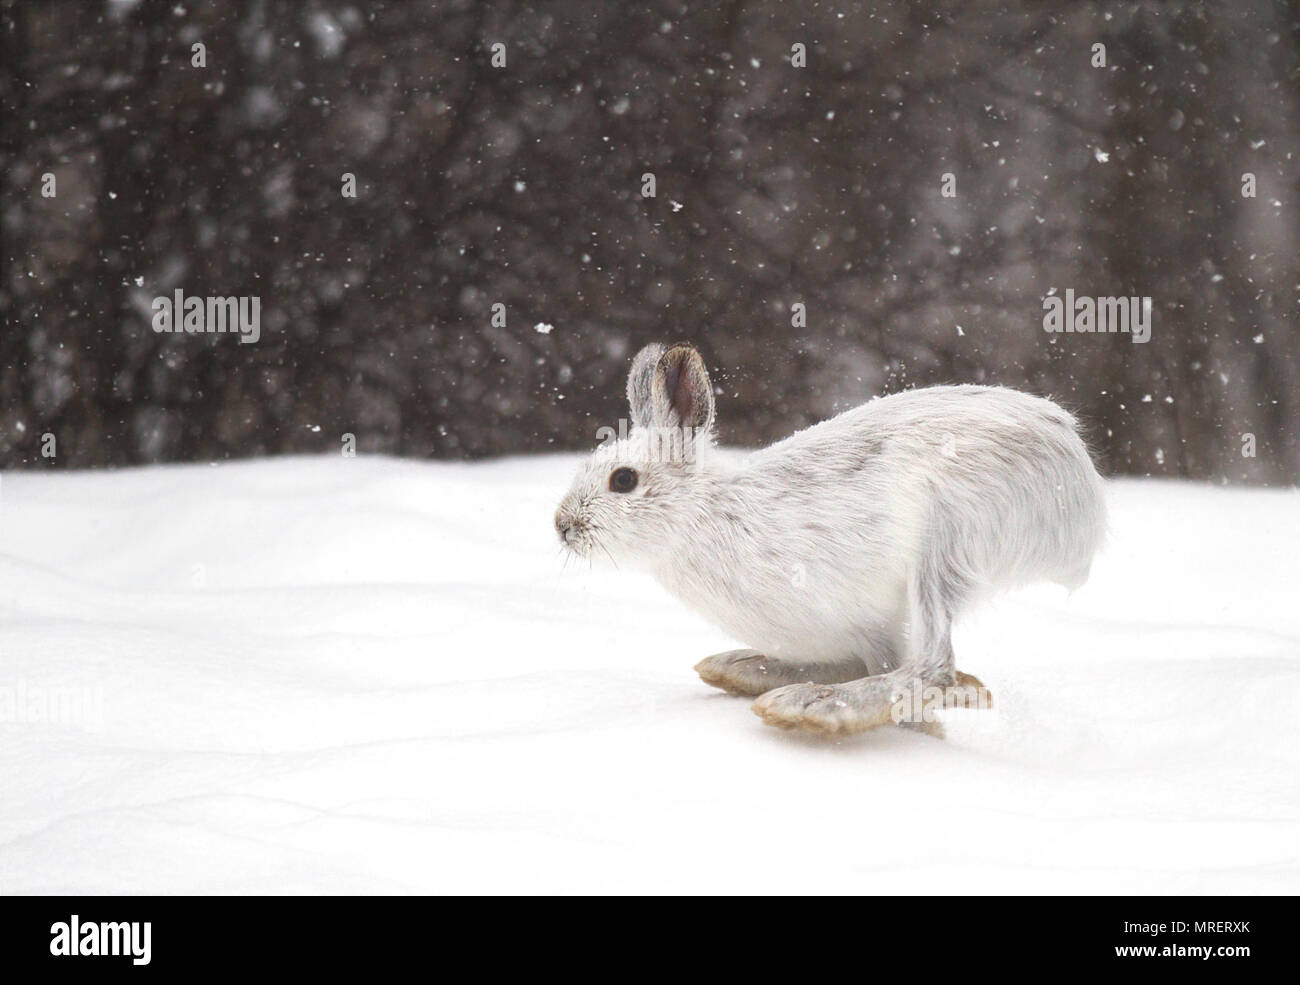 Le lièvre ou diverses espèces de lièvre (Lepus americanus) en marche dans la neige avec un manteau blanc en hiver au Canada Banque D'Images